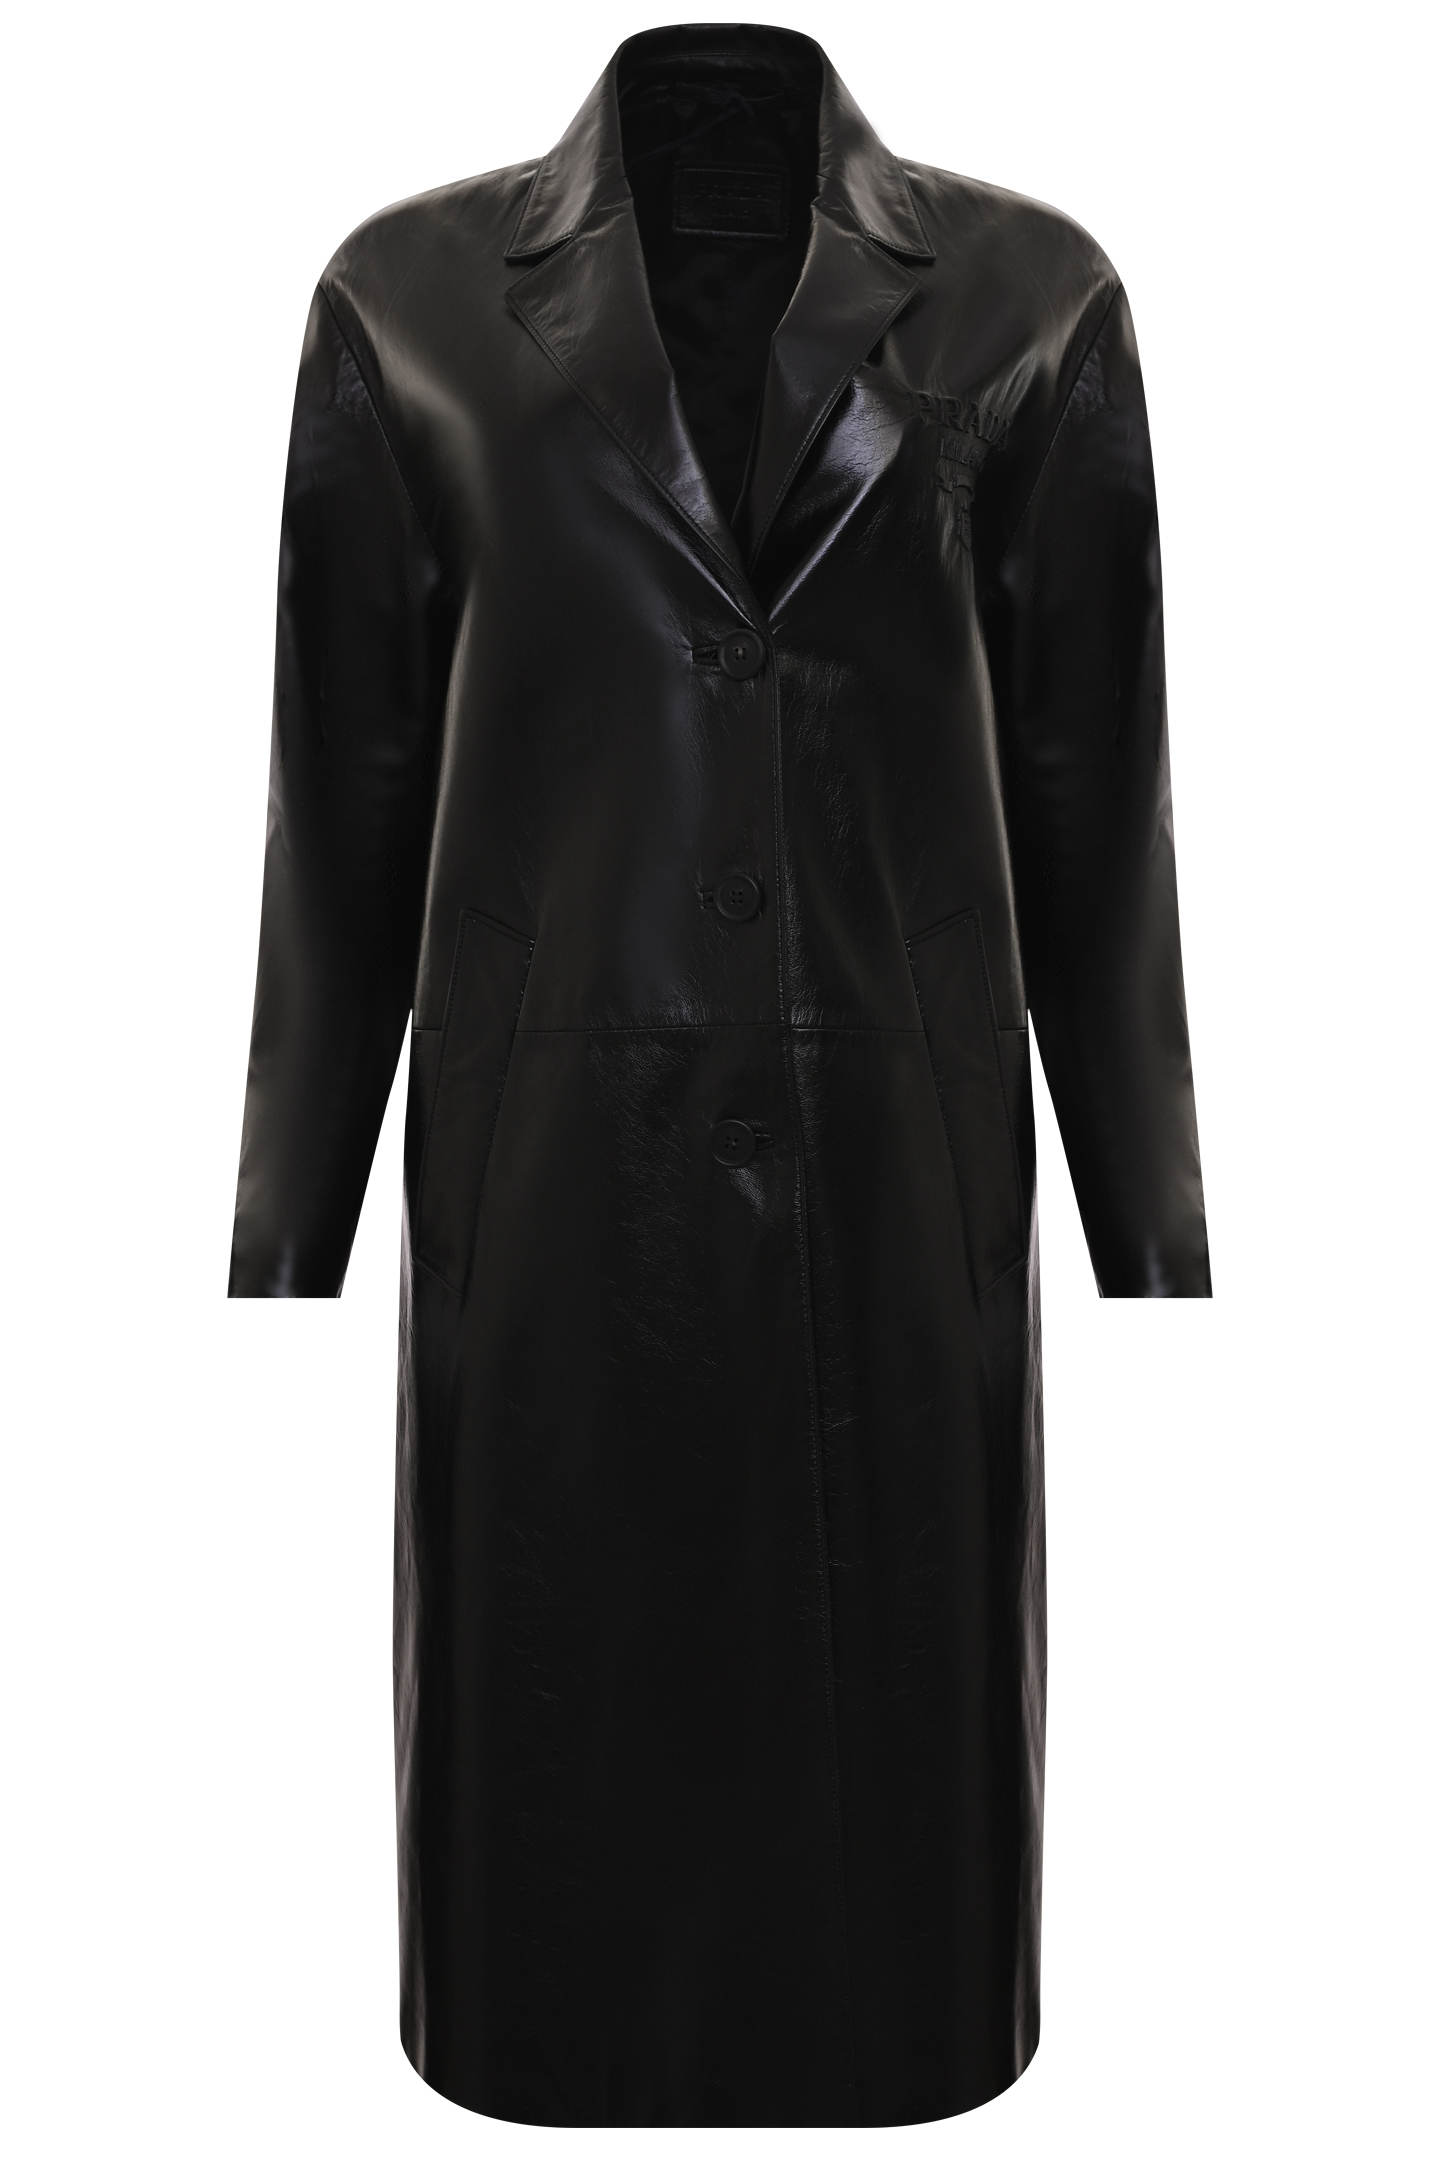 Пальто PRADA 56A018 10RE, цвет: Черный, Женский